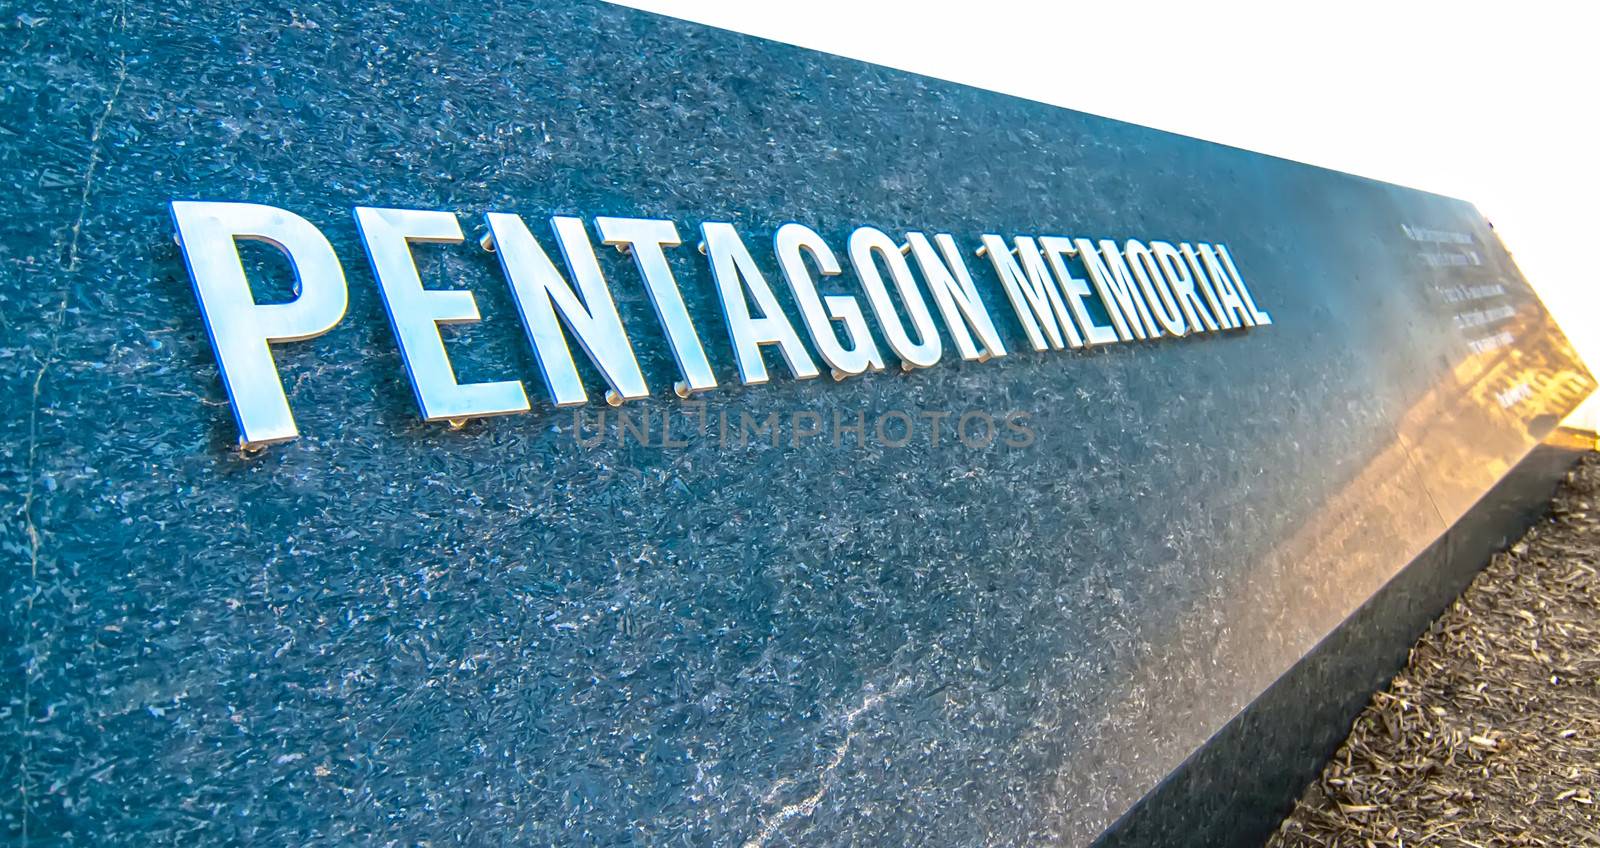 911 Memorial Victims Pentagon Attack in Arlington Virginia in the Washington DC Metropolitan area.